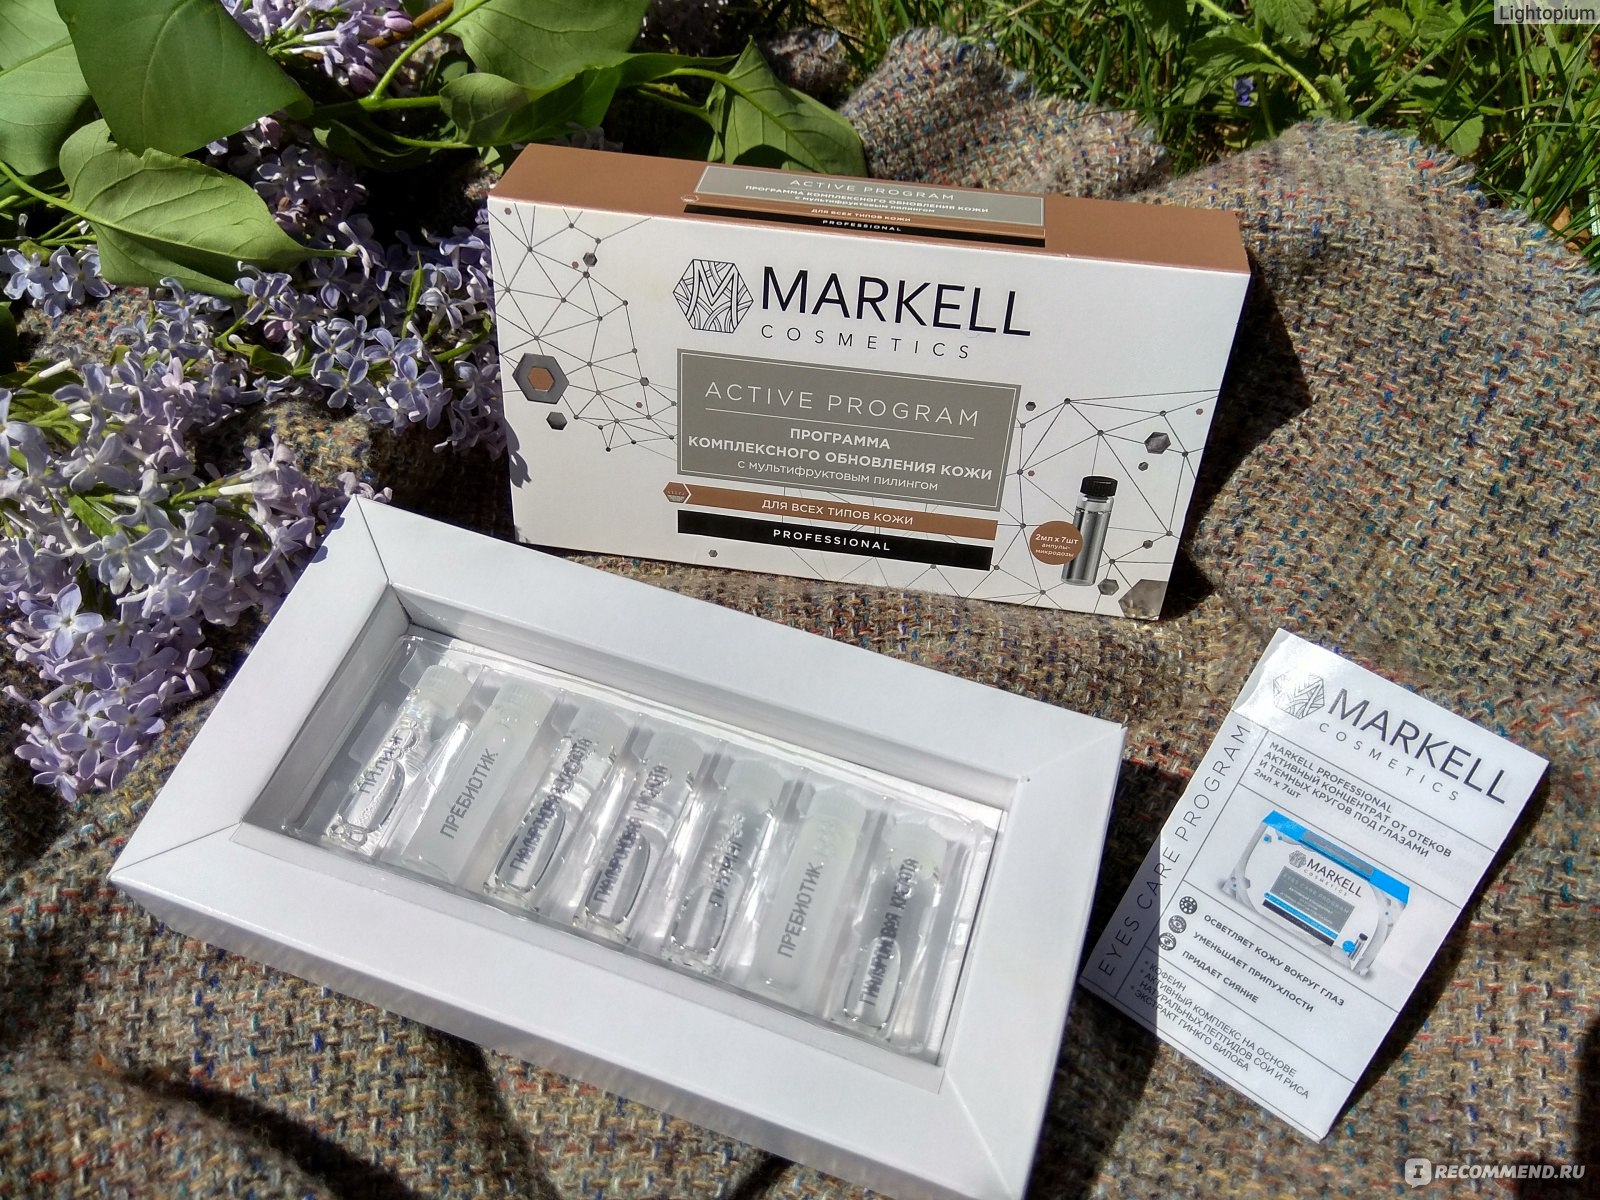 Пилинг для лица Markell Active Program Программа комплексного обновления кожи с мультифруктовым пилингом  фото